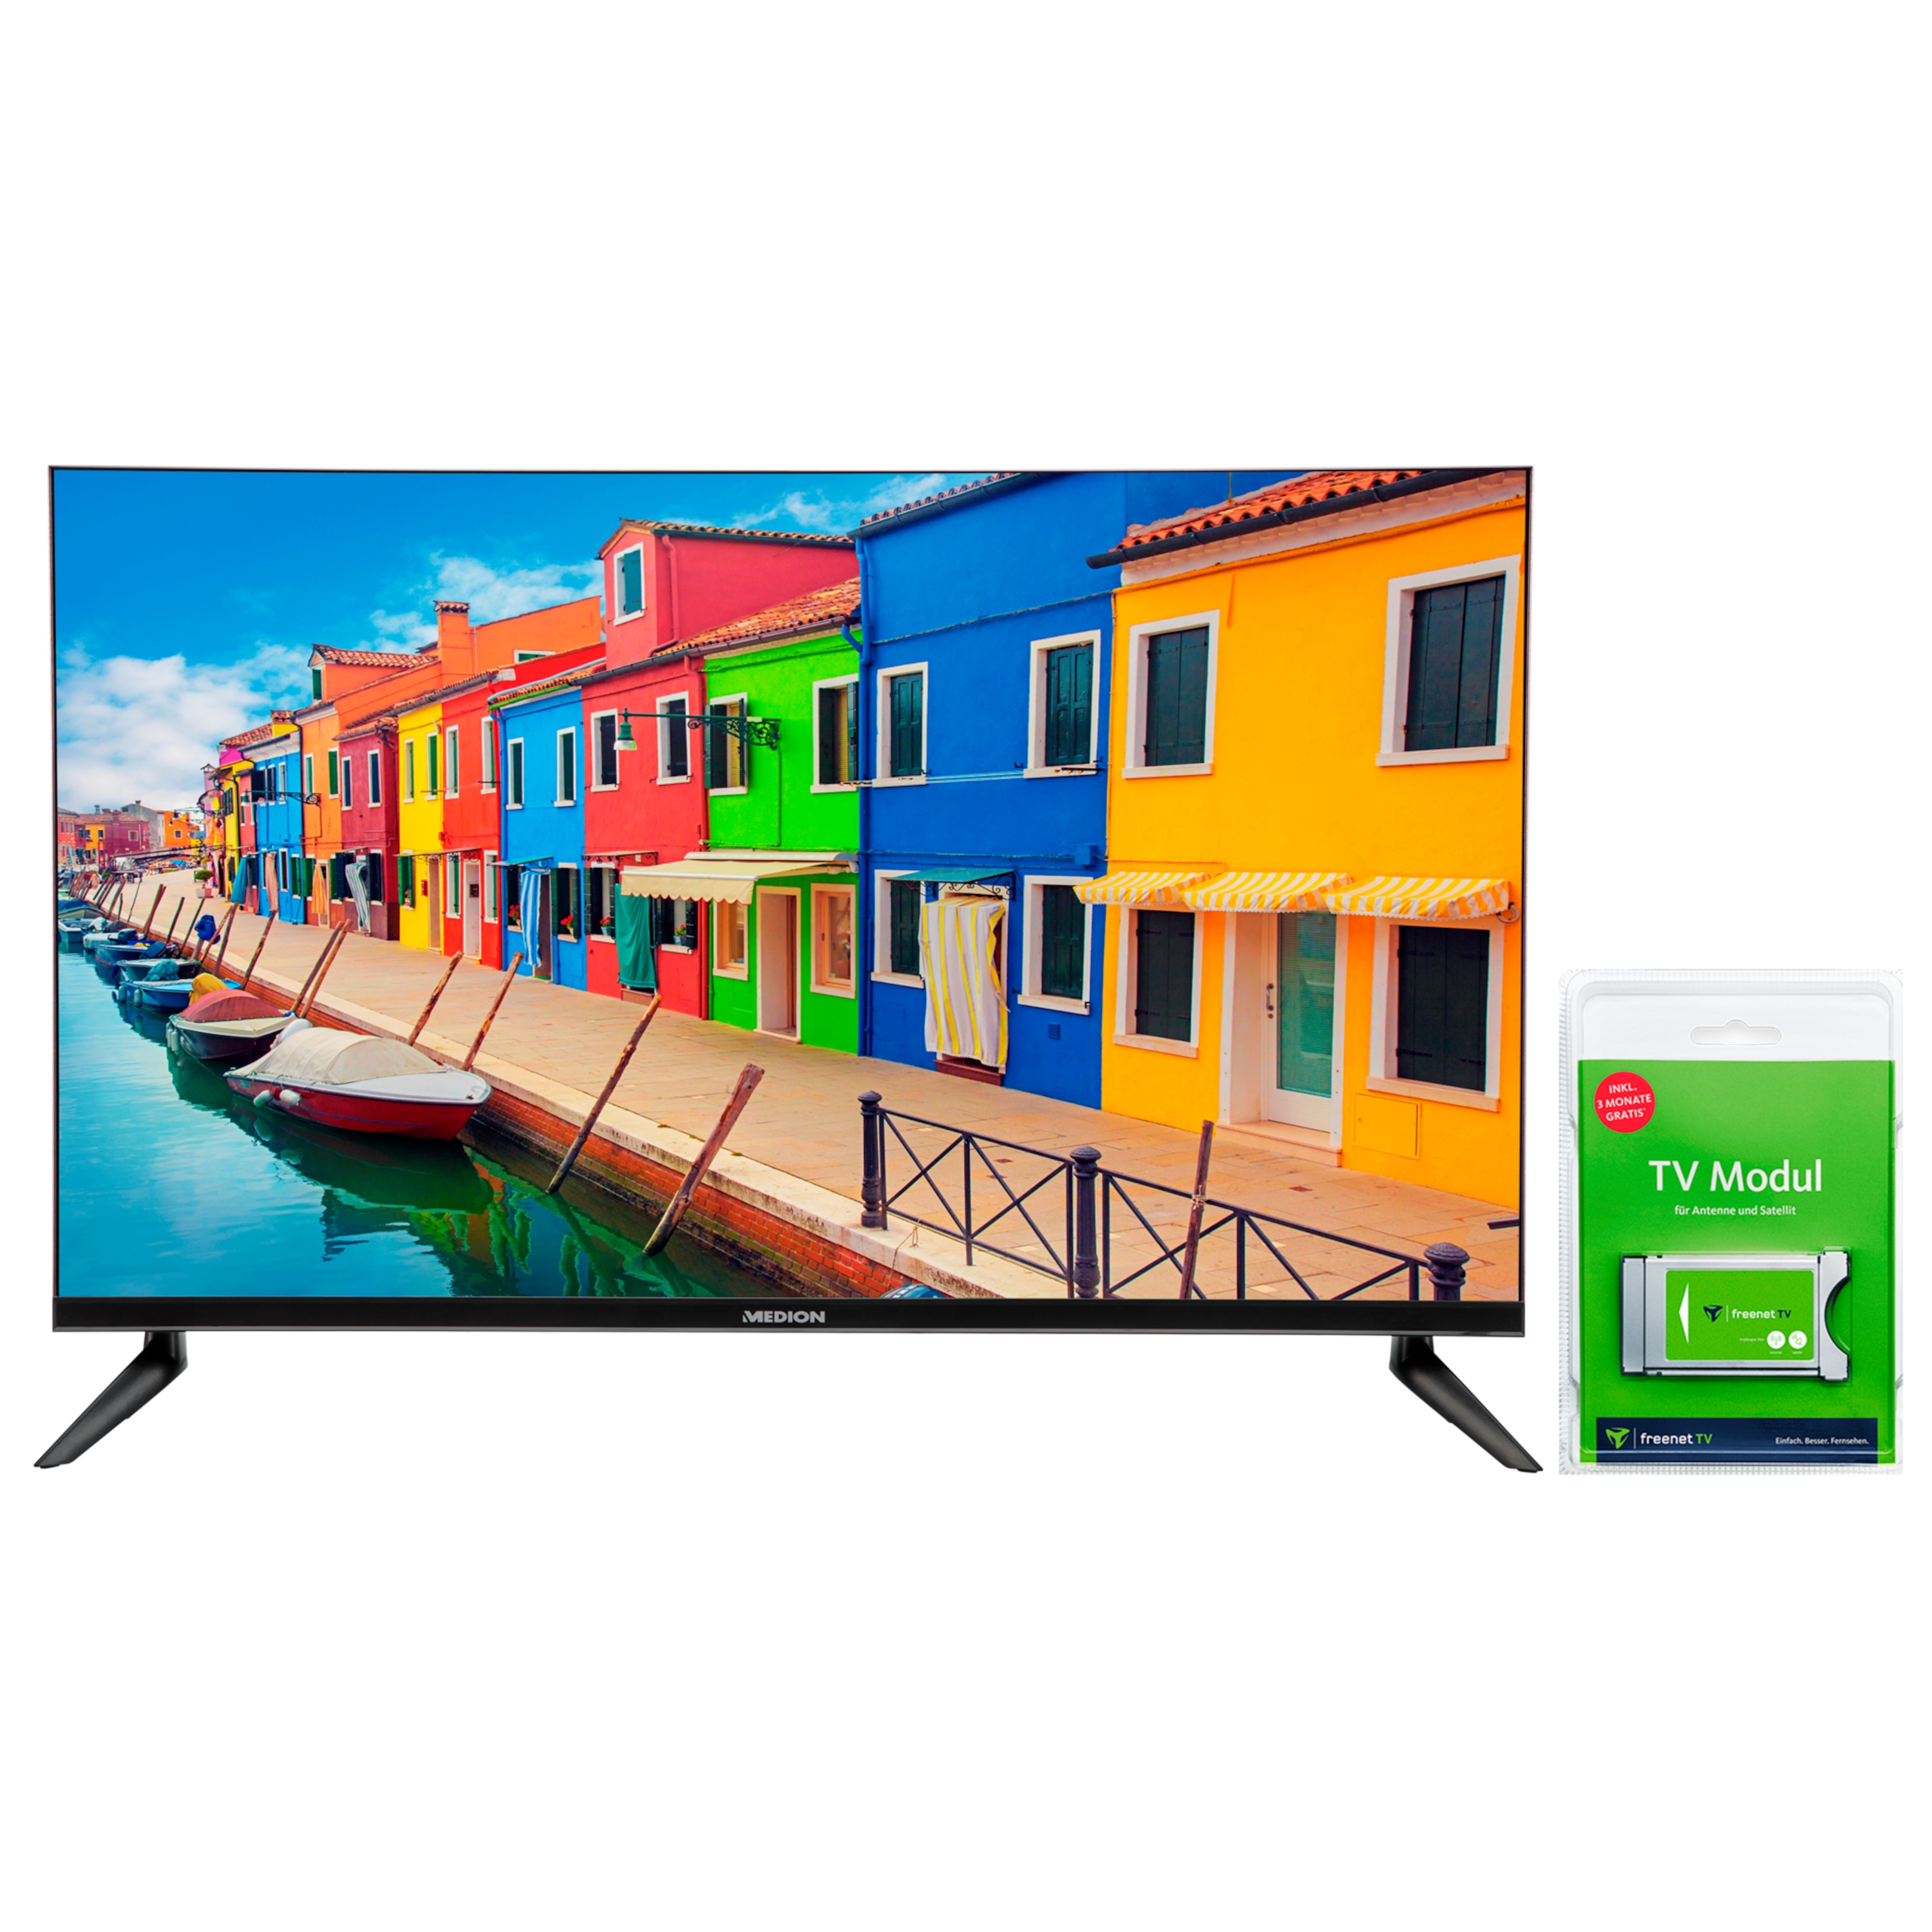 MEDION® LIFE® E13211, LED-Backlight TV, 80 cm (31,5“), inkl. DVB-T 2 HD Modul (3 Monate freenet TV gratis) - ARTIKELSET